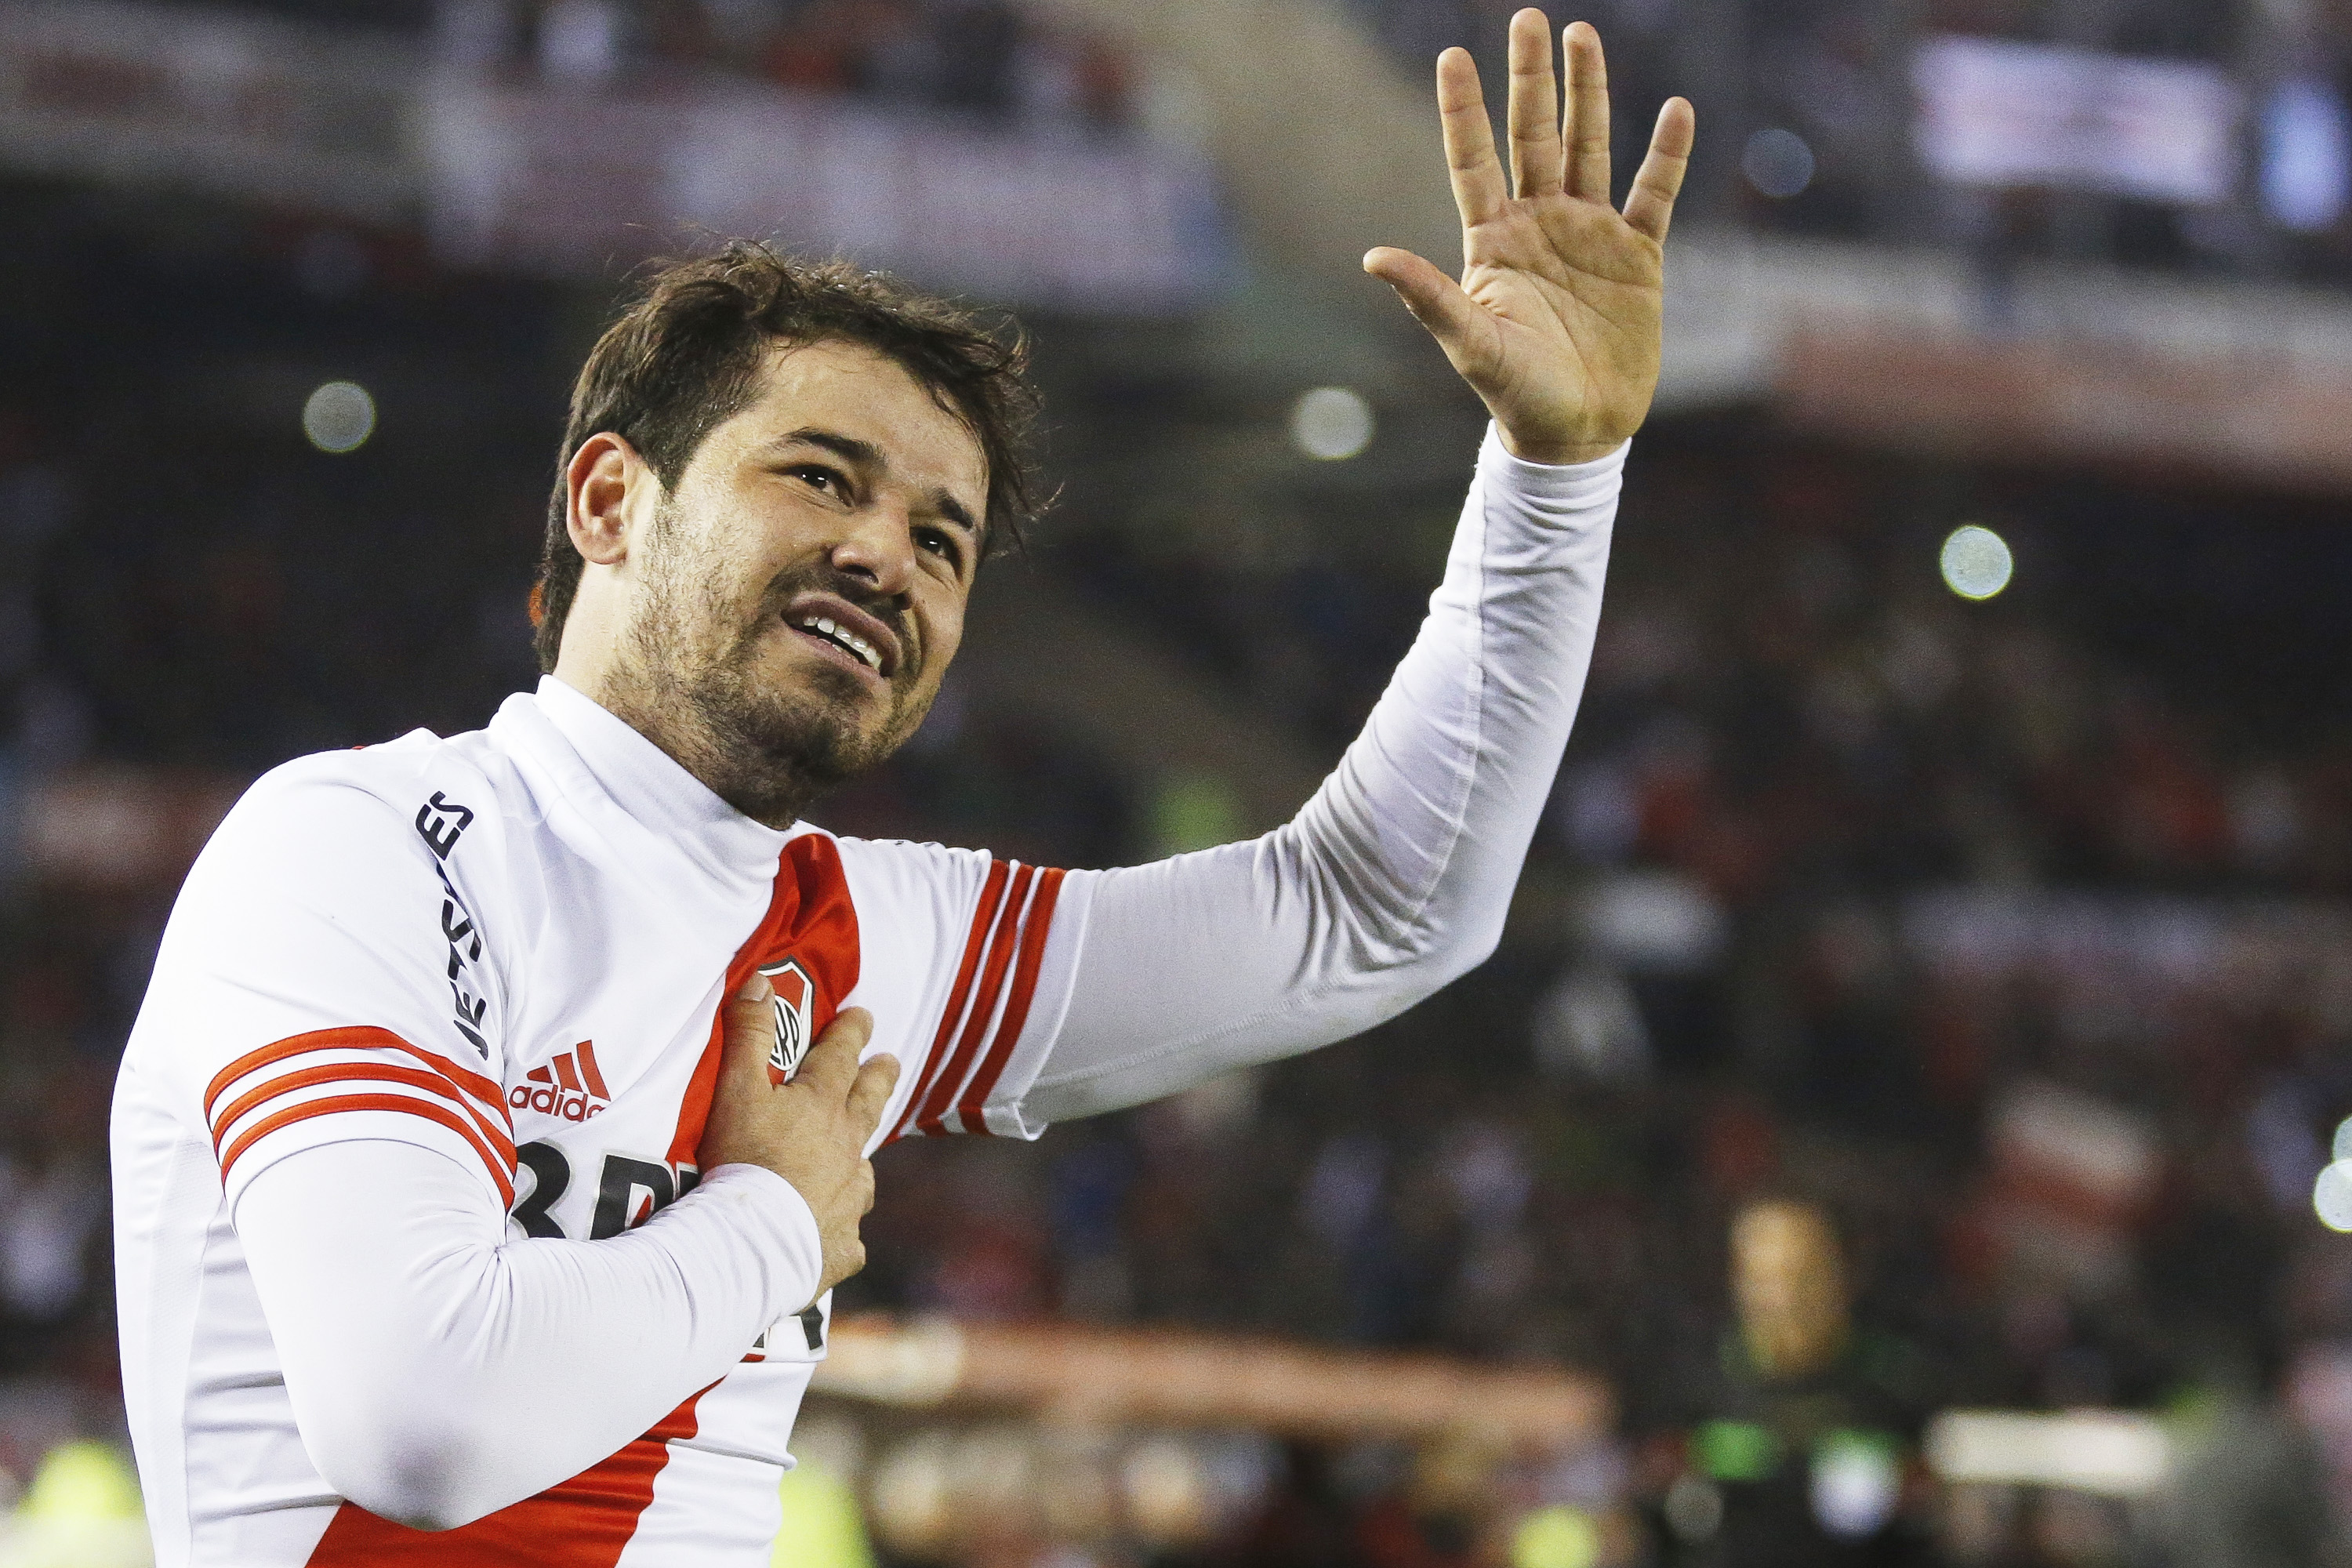 Vencido por lesões, ídolo do River Plate se aposenta aos 31 anos